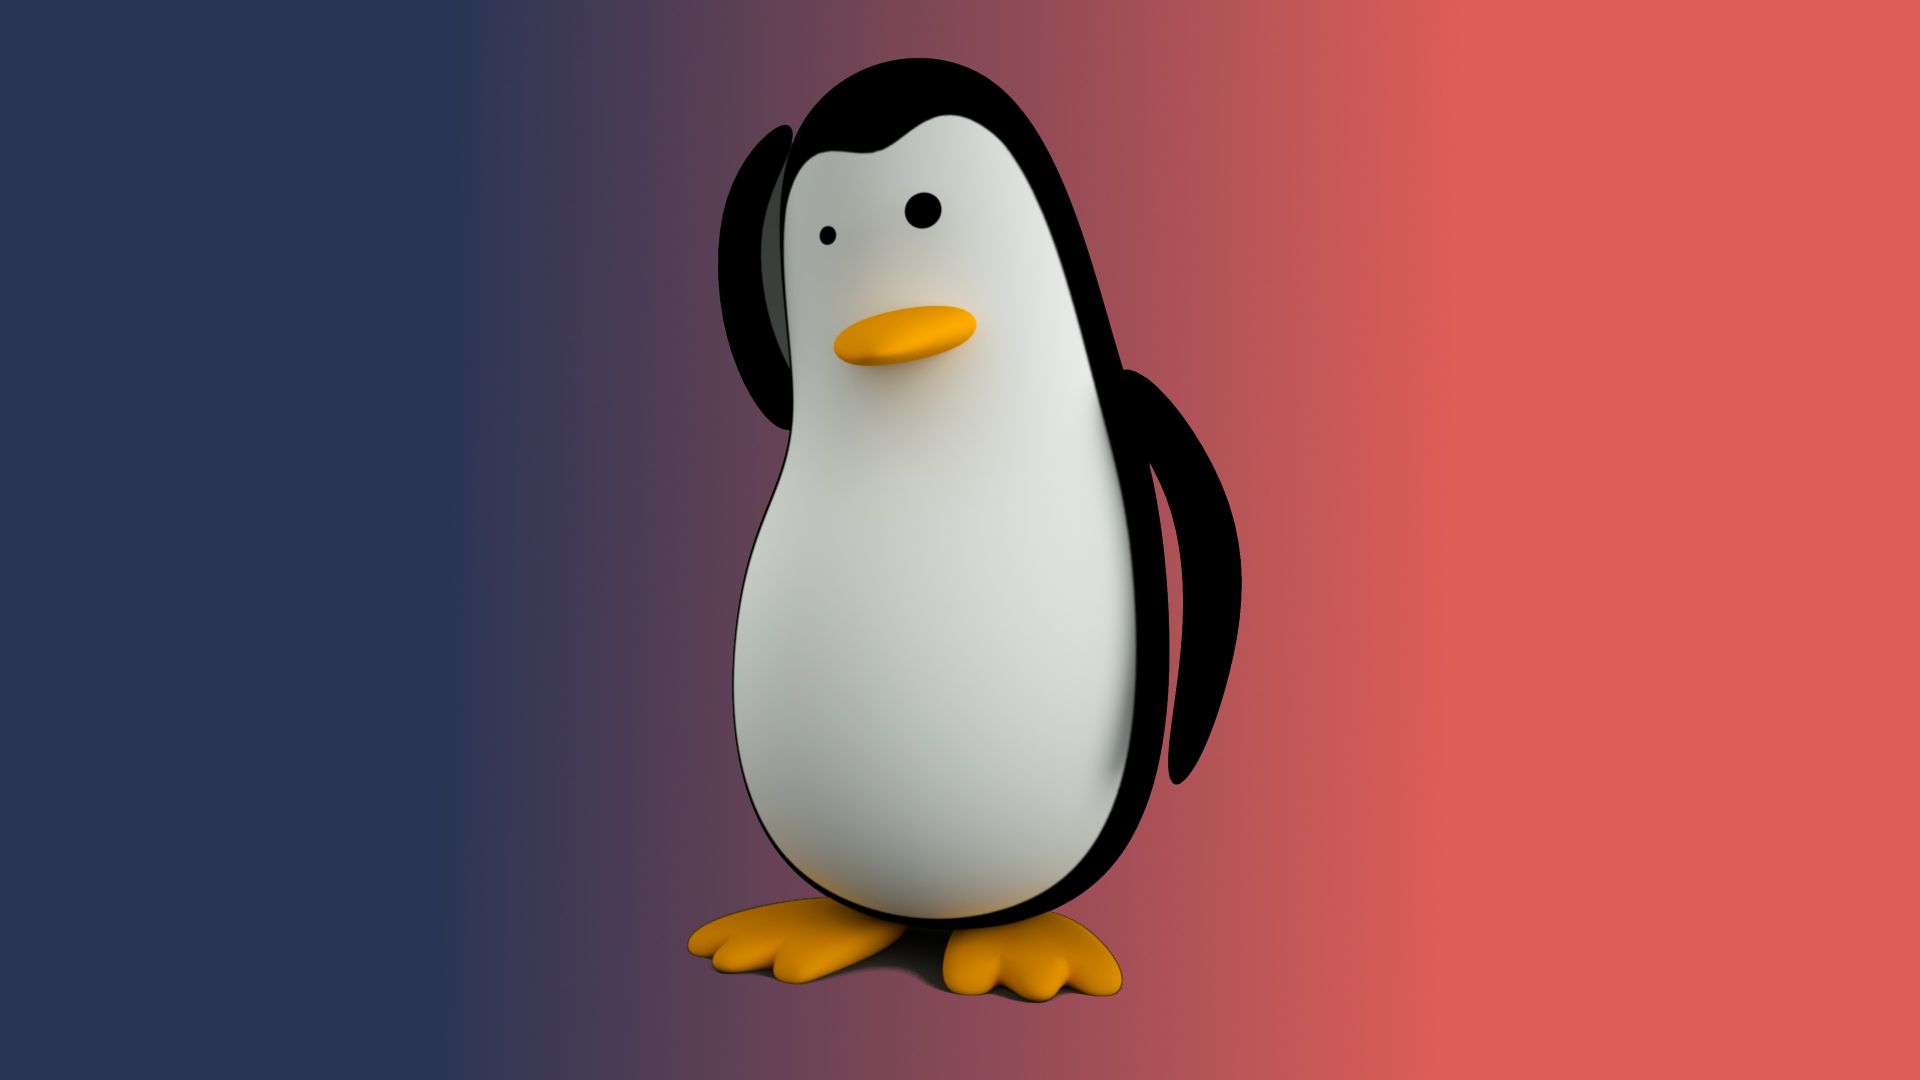 Wallpaper Linux tux penguin